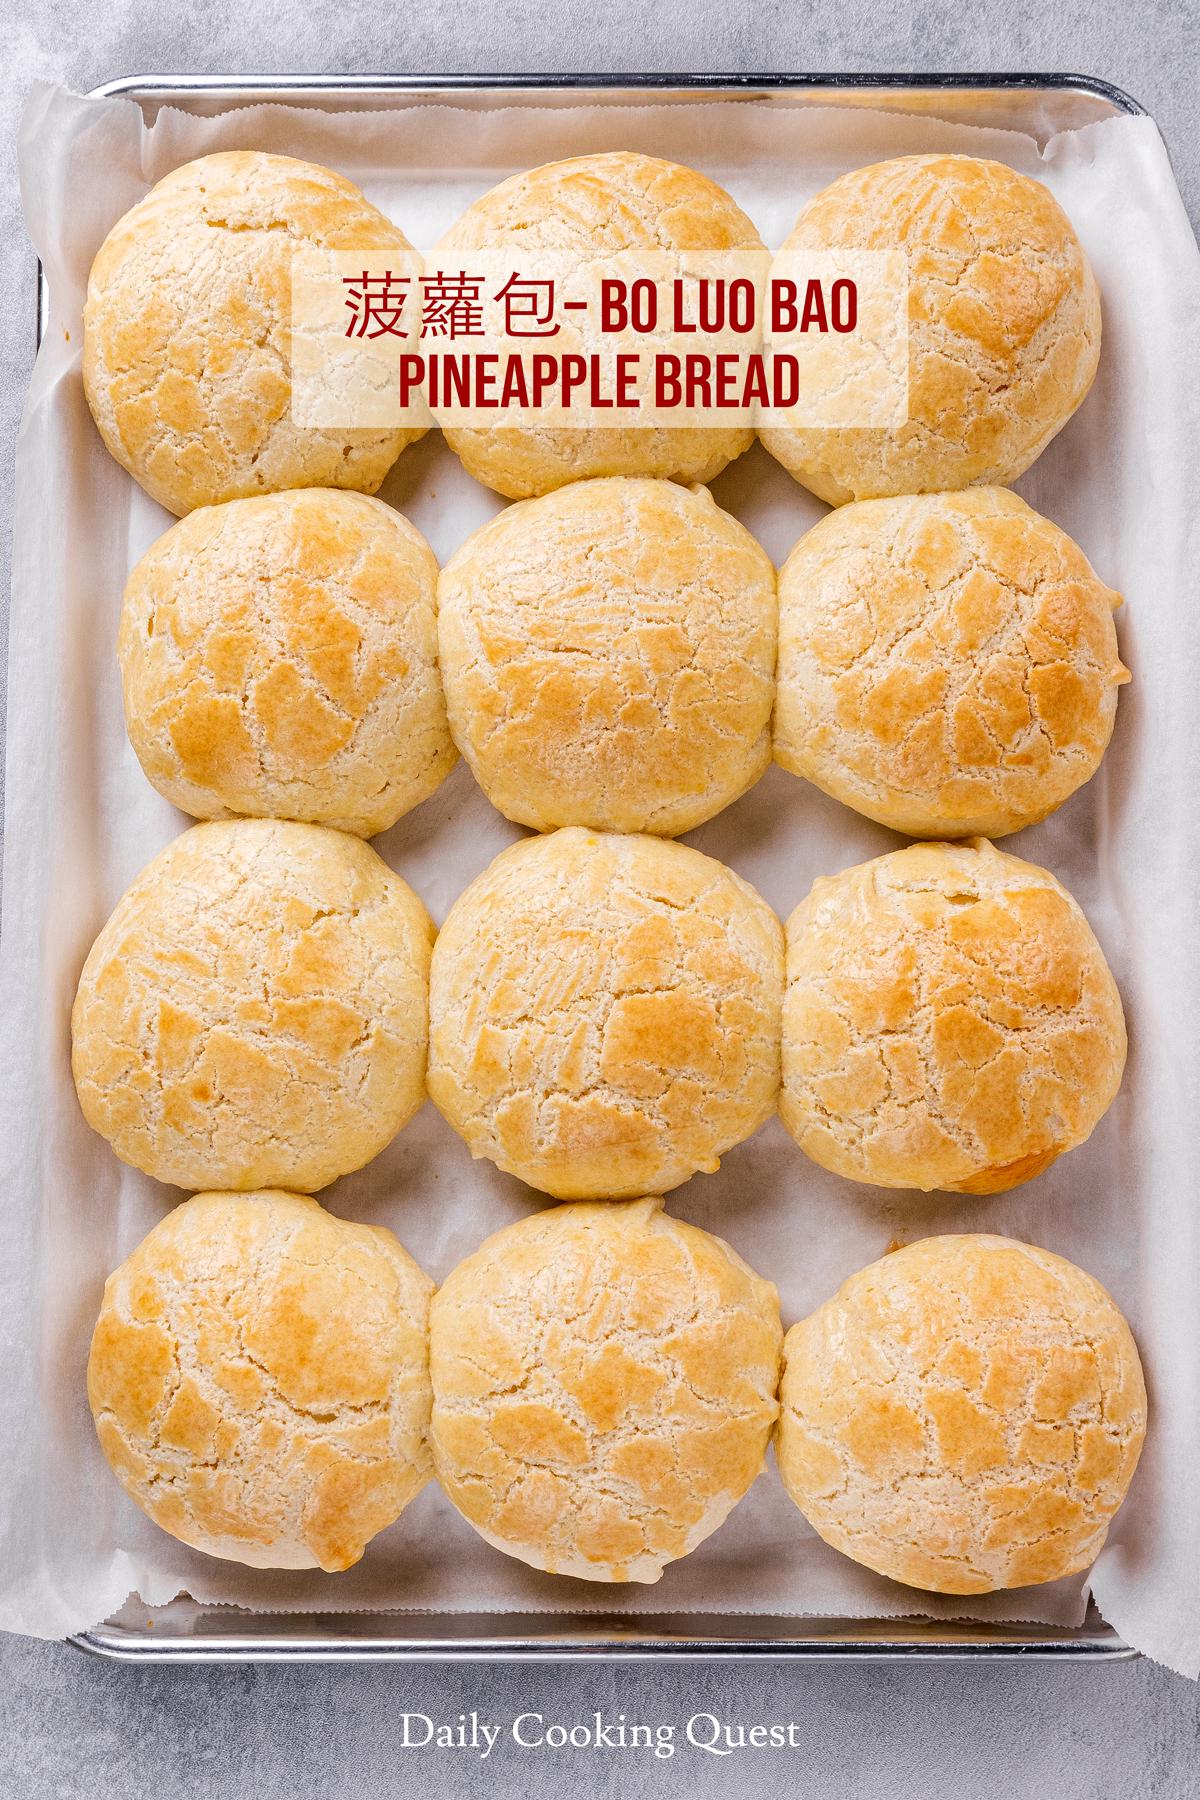 Pineapple bread / 菠蘿包 / Bo Luo Bao